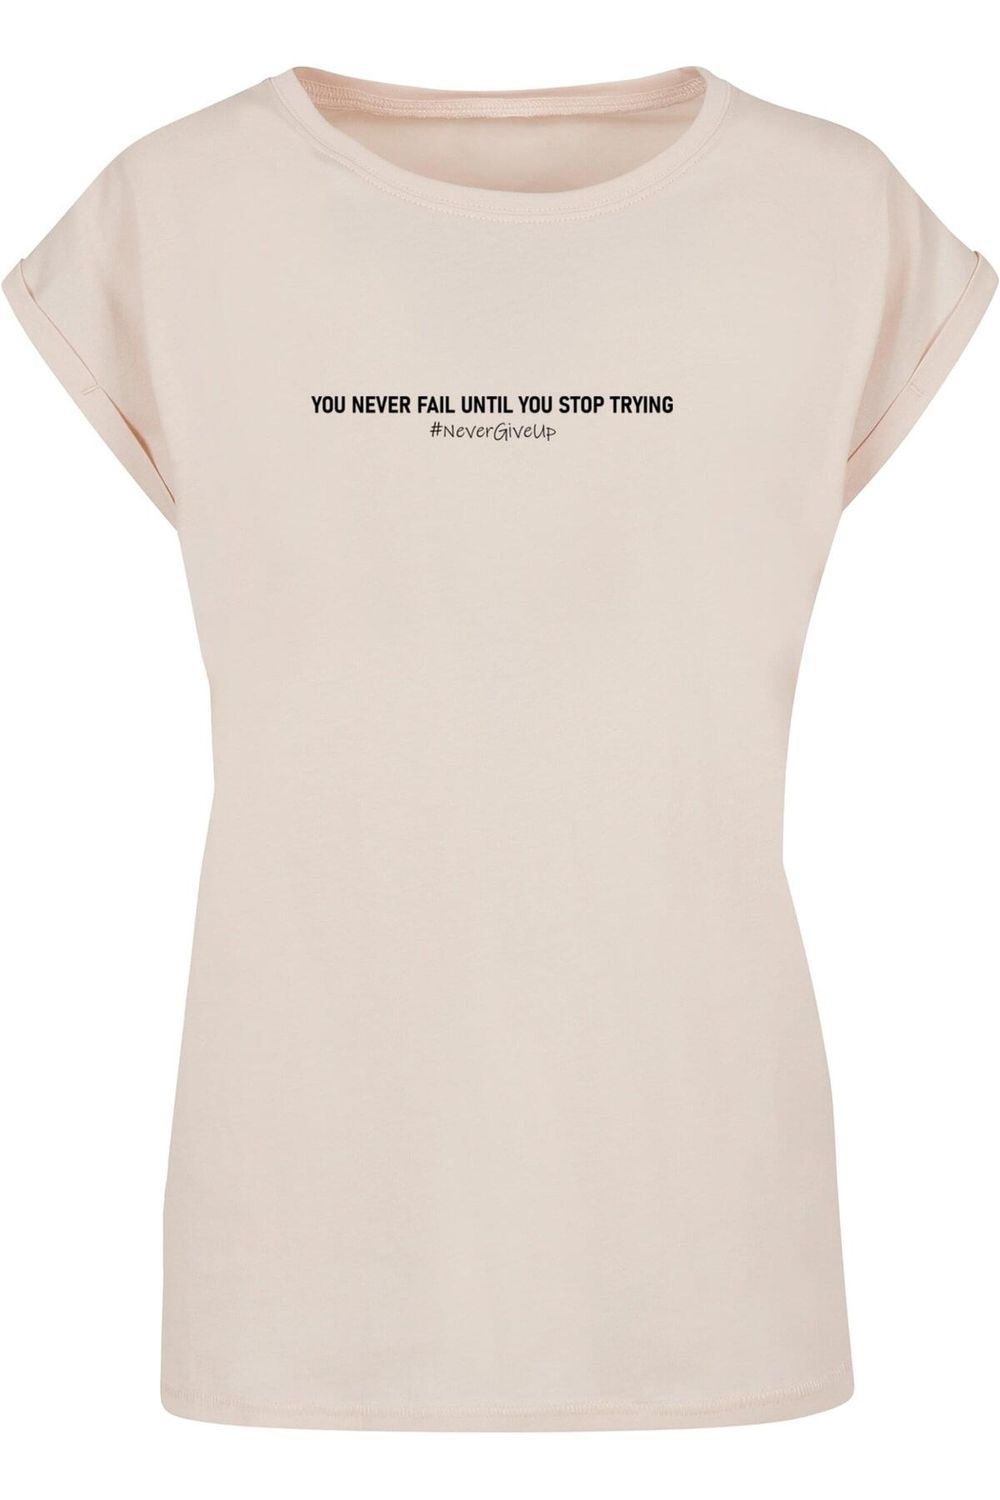 Merchcode Damen Ladies Never Give Up - Trendyol Schulterpartie mit verlängerter T-Shirt